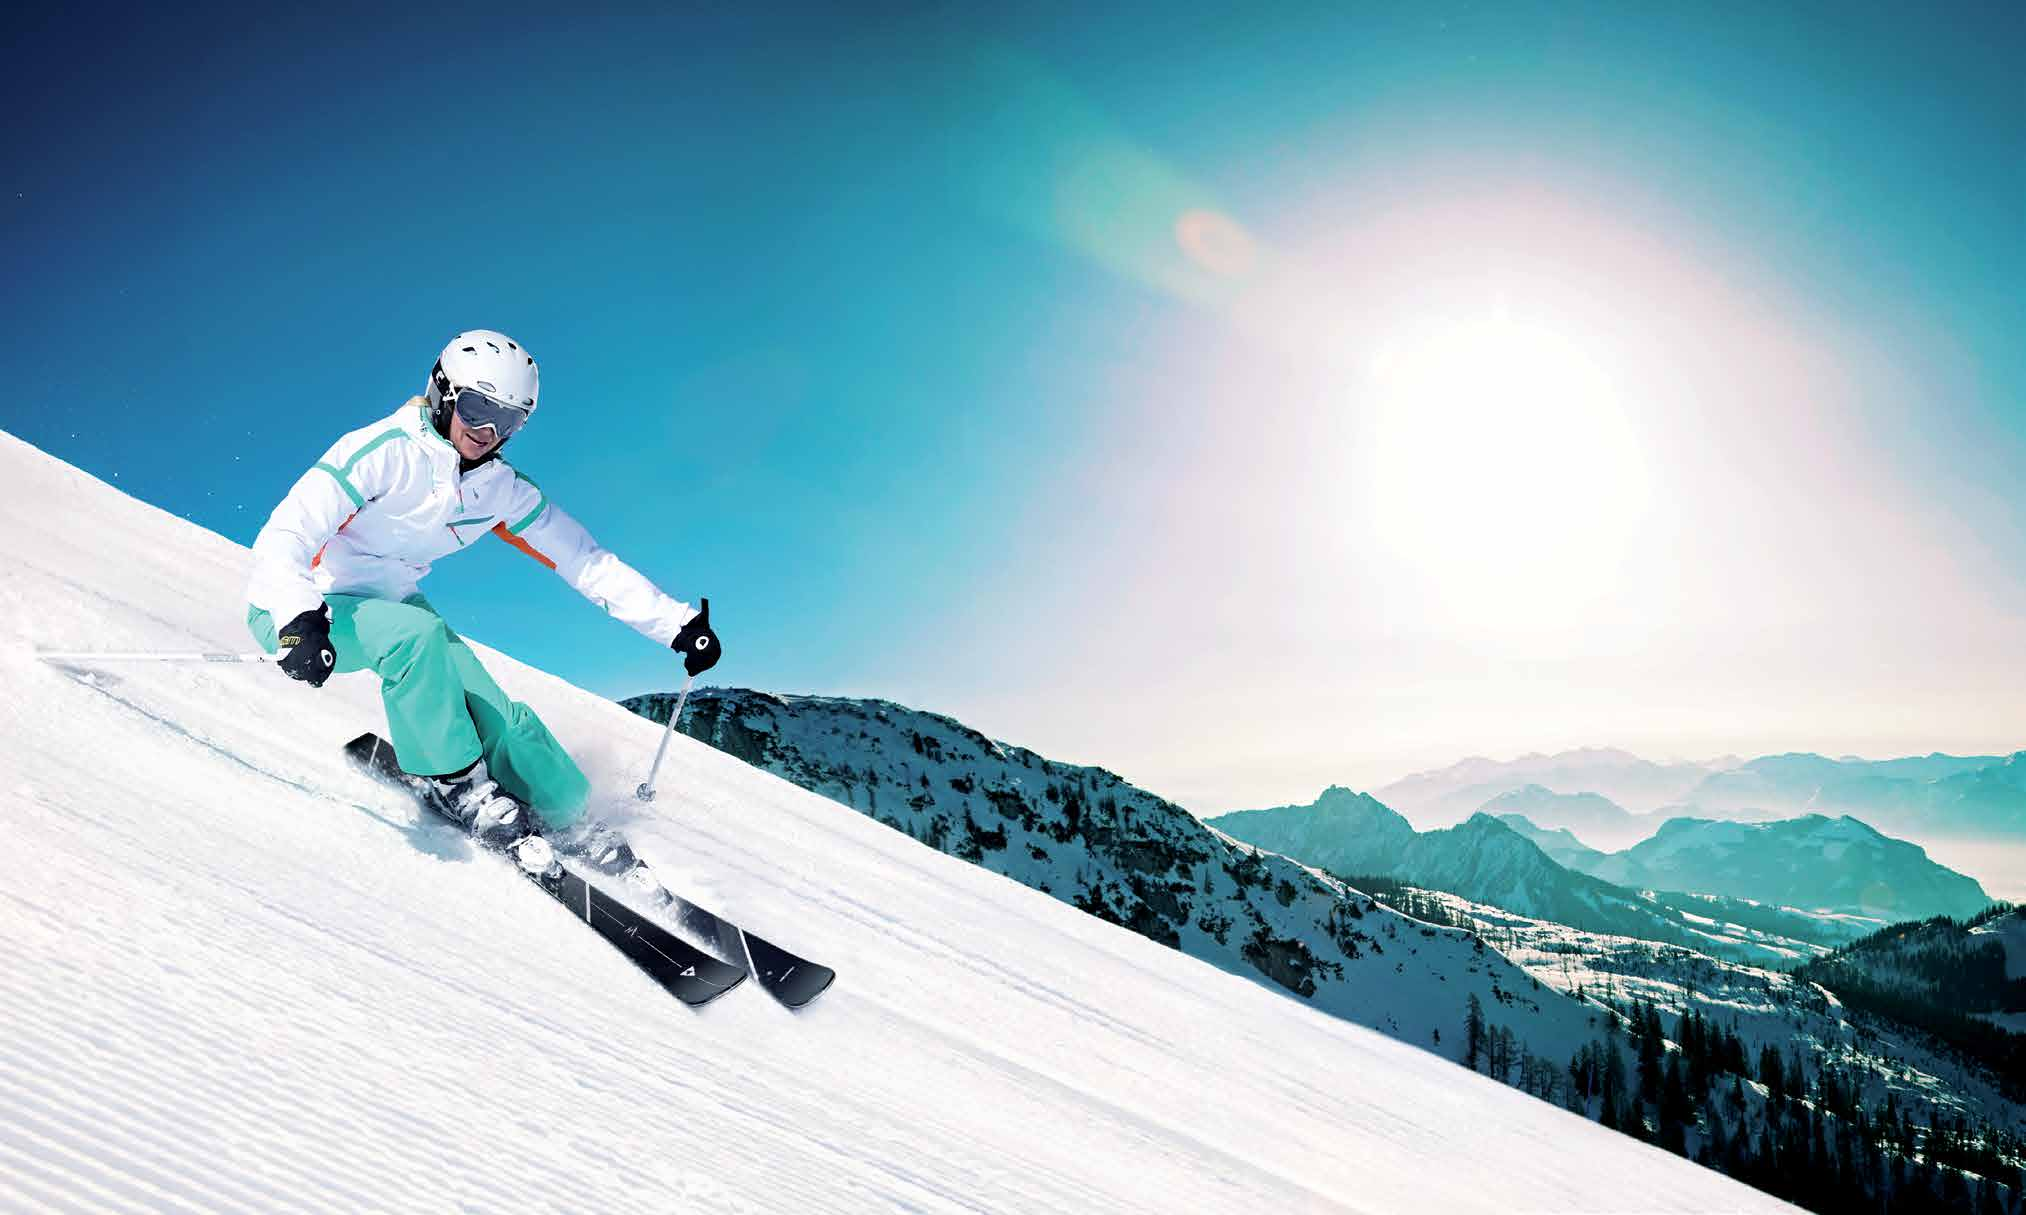 SKIS WOMEN SPORT A ZÁBAVA NA SJEZDOVCE. Sportovní lyže s hravou optikou, tak se prezentuje nejnovější dámská řada Women Sport. Svým svůdným designem láká všechny lyžařky.